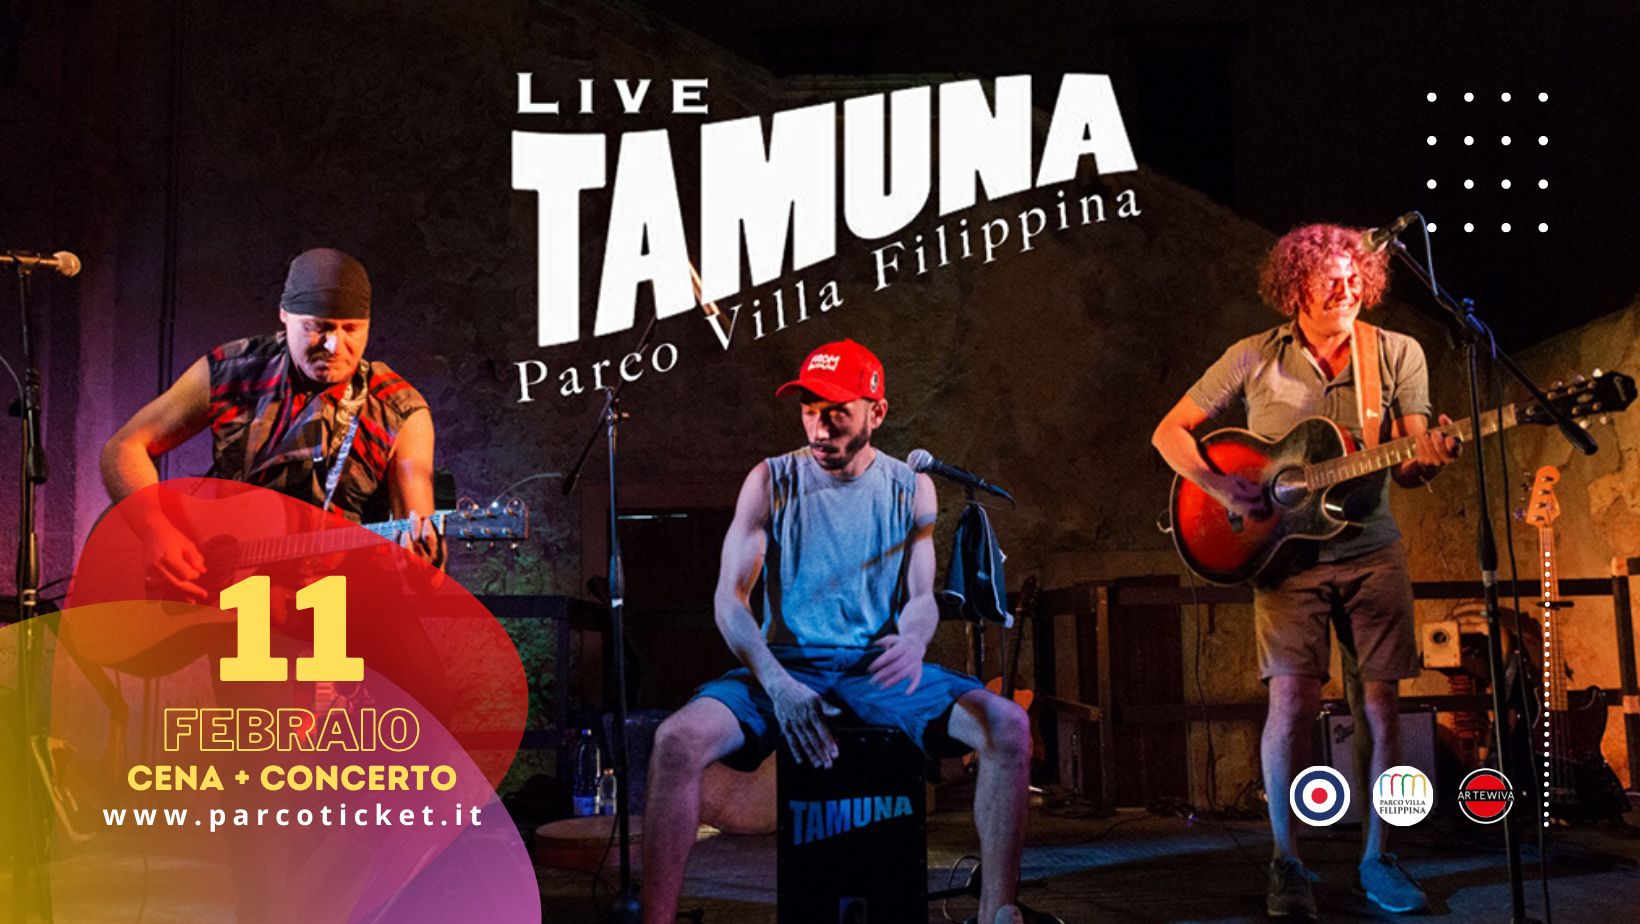 TAMUNA Live al Planetario di Villa Filippina – Cena + Concerto